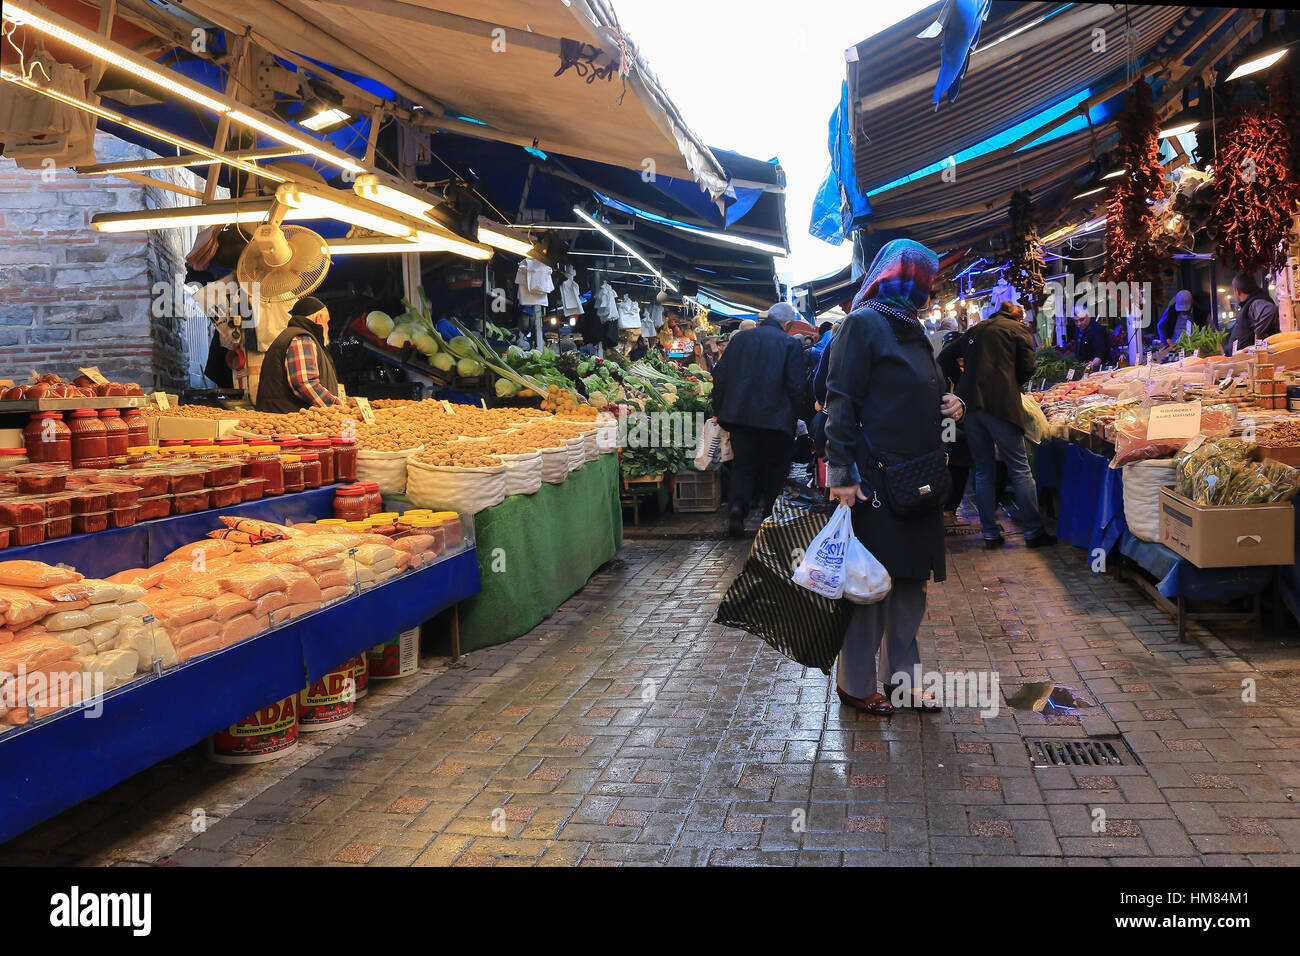 Bursa, Turquie - 23 Février 2016 : des légumes frais , les écrous et les fruits se distingue sur le marché libre en Bursa Turquie Banque D'Images